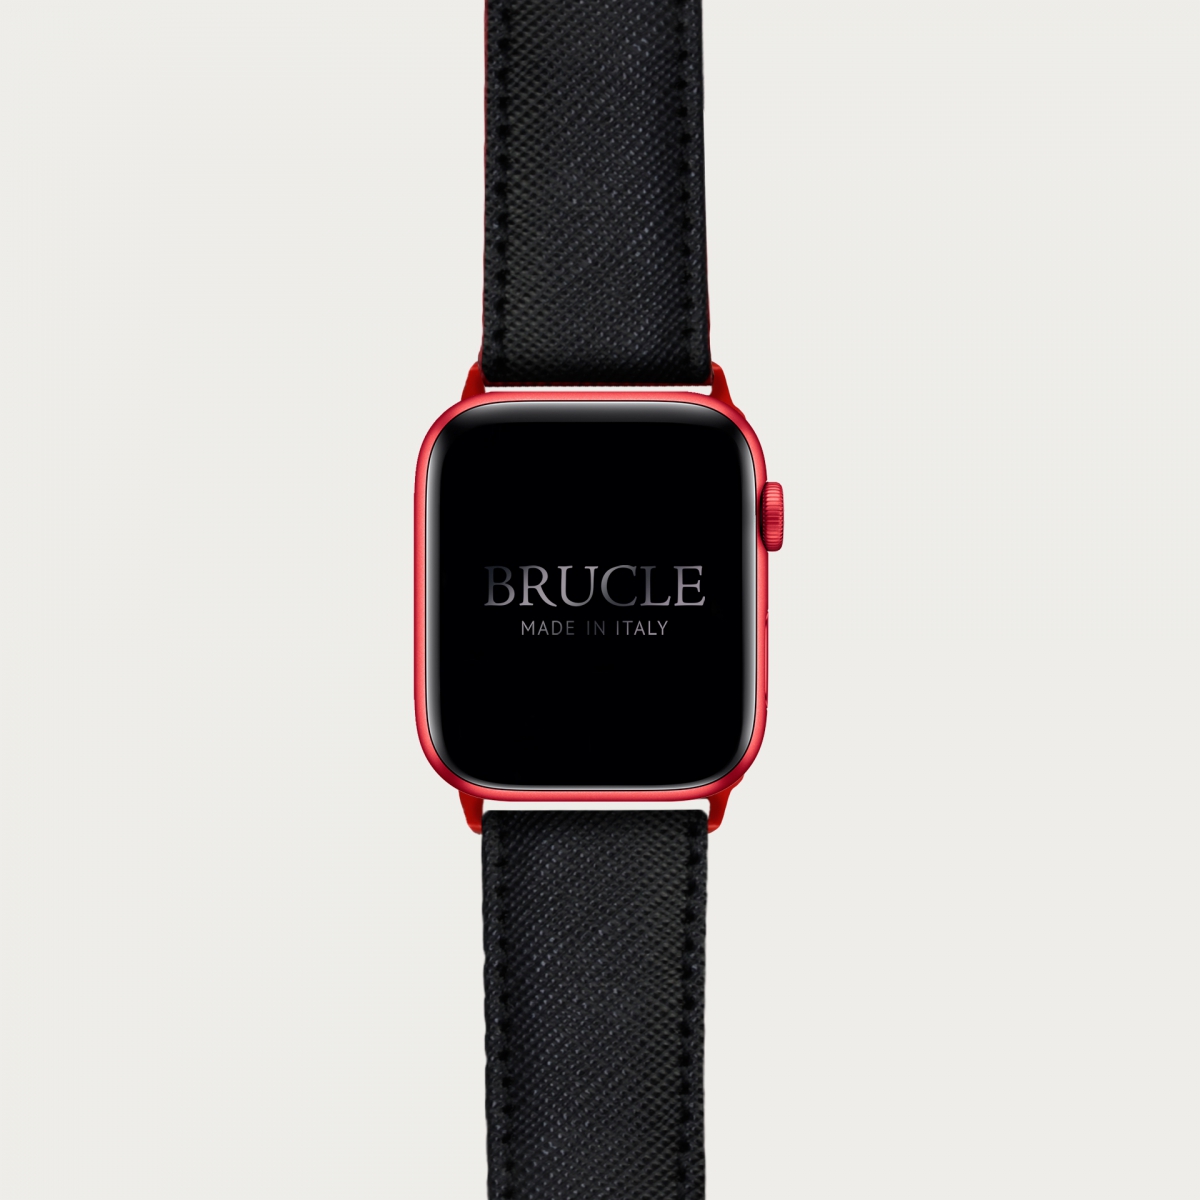 Bracelet en cuir pour montre, Apple Watch et Samsung smartwatch, imprimé Saffiano, noir